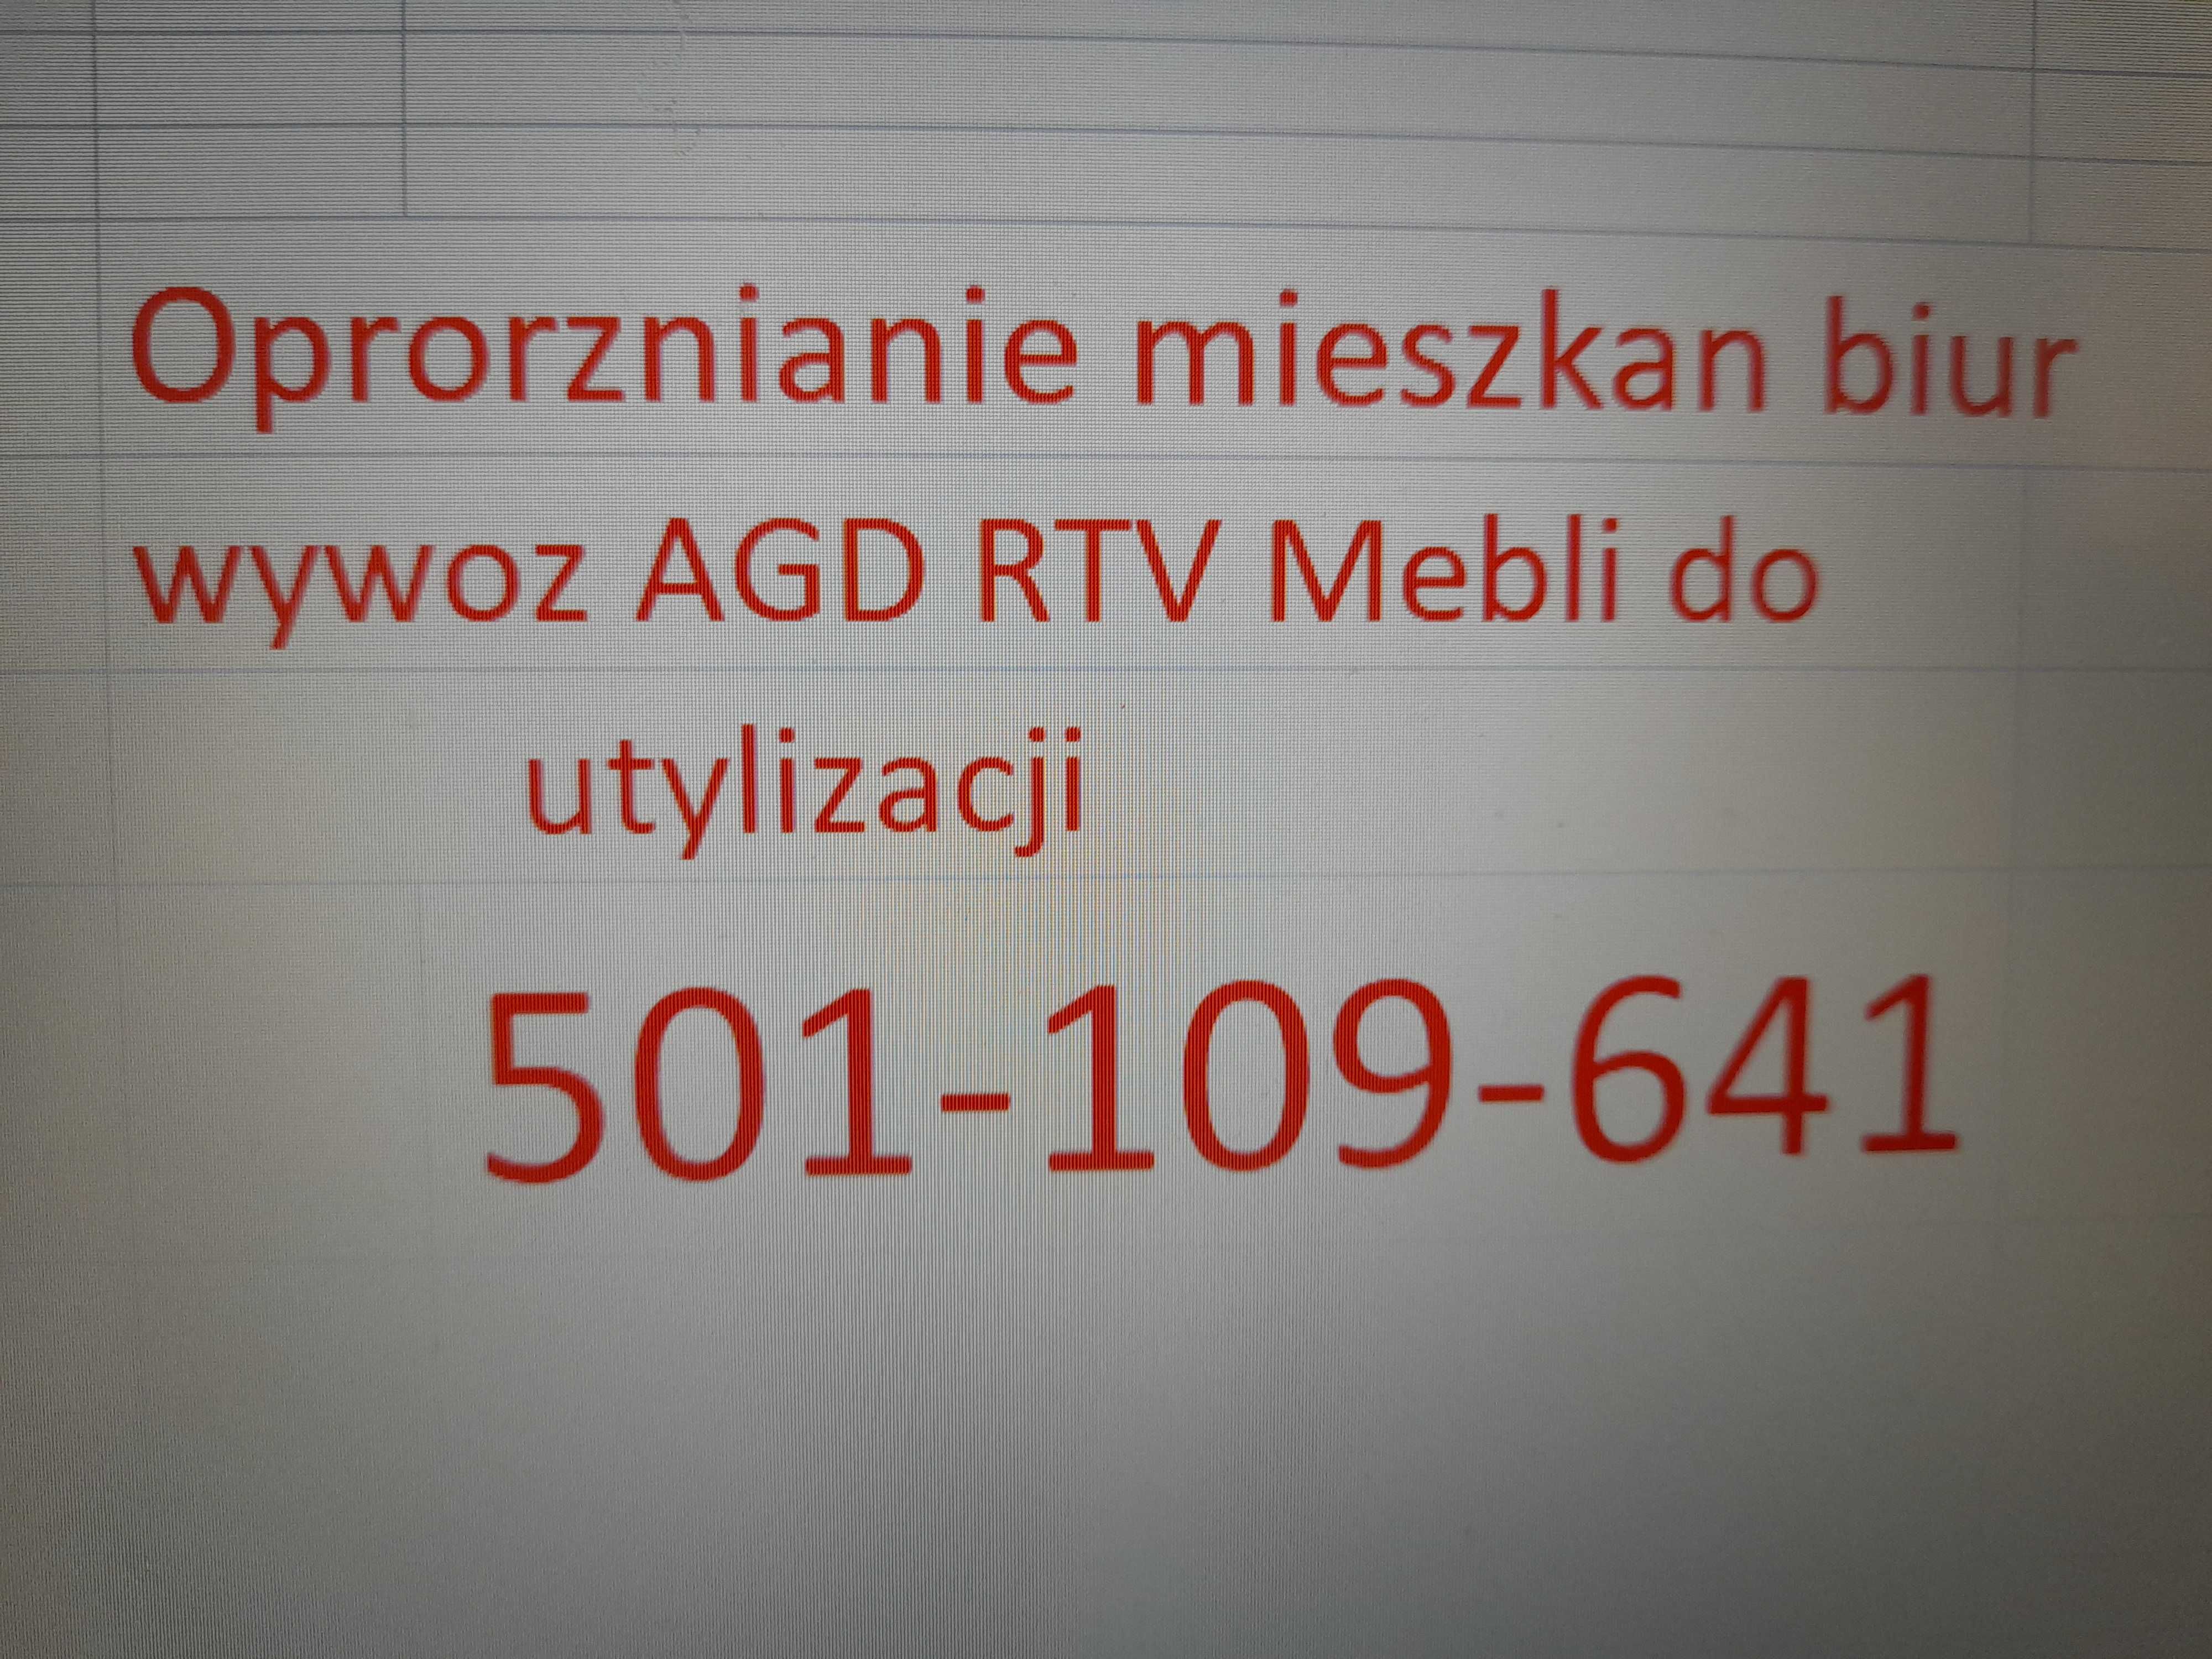 Oproznianie mieszkan biur Wywoz AGD RTV Mebli do utylizacji Mikolow